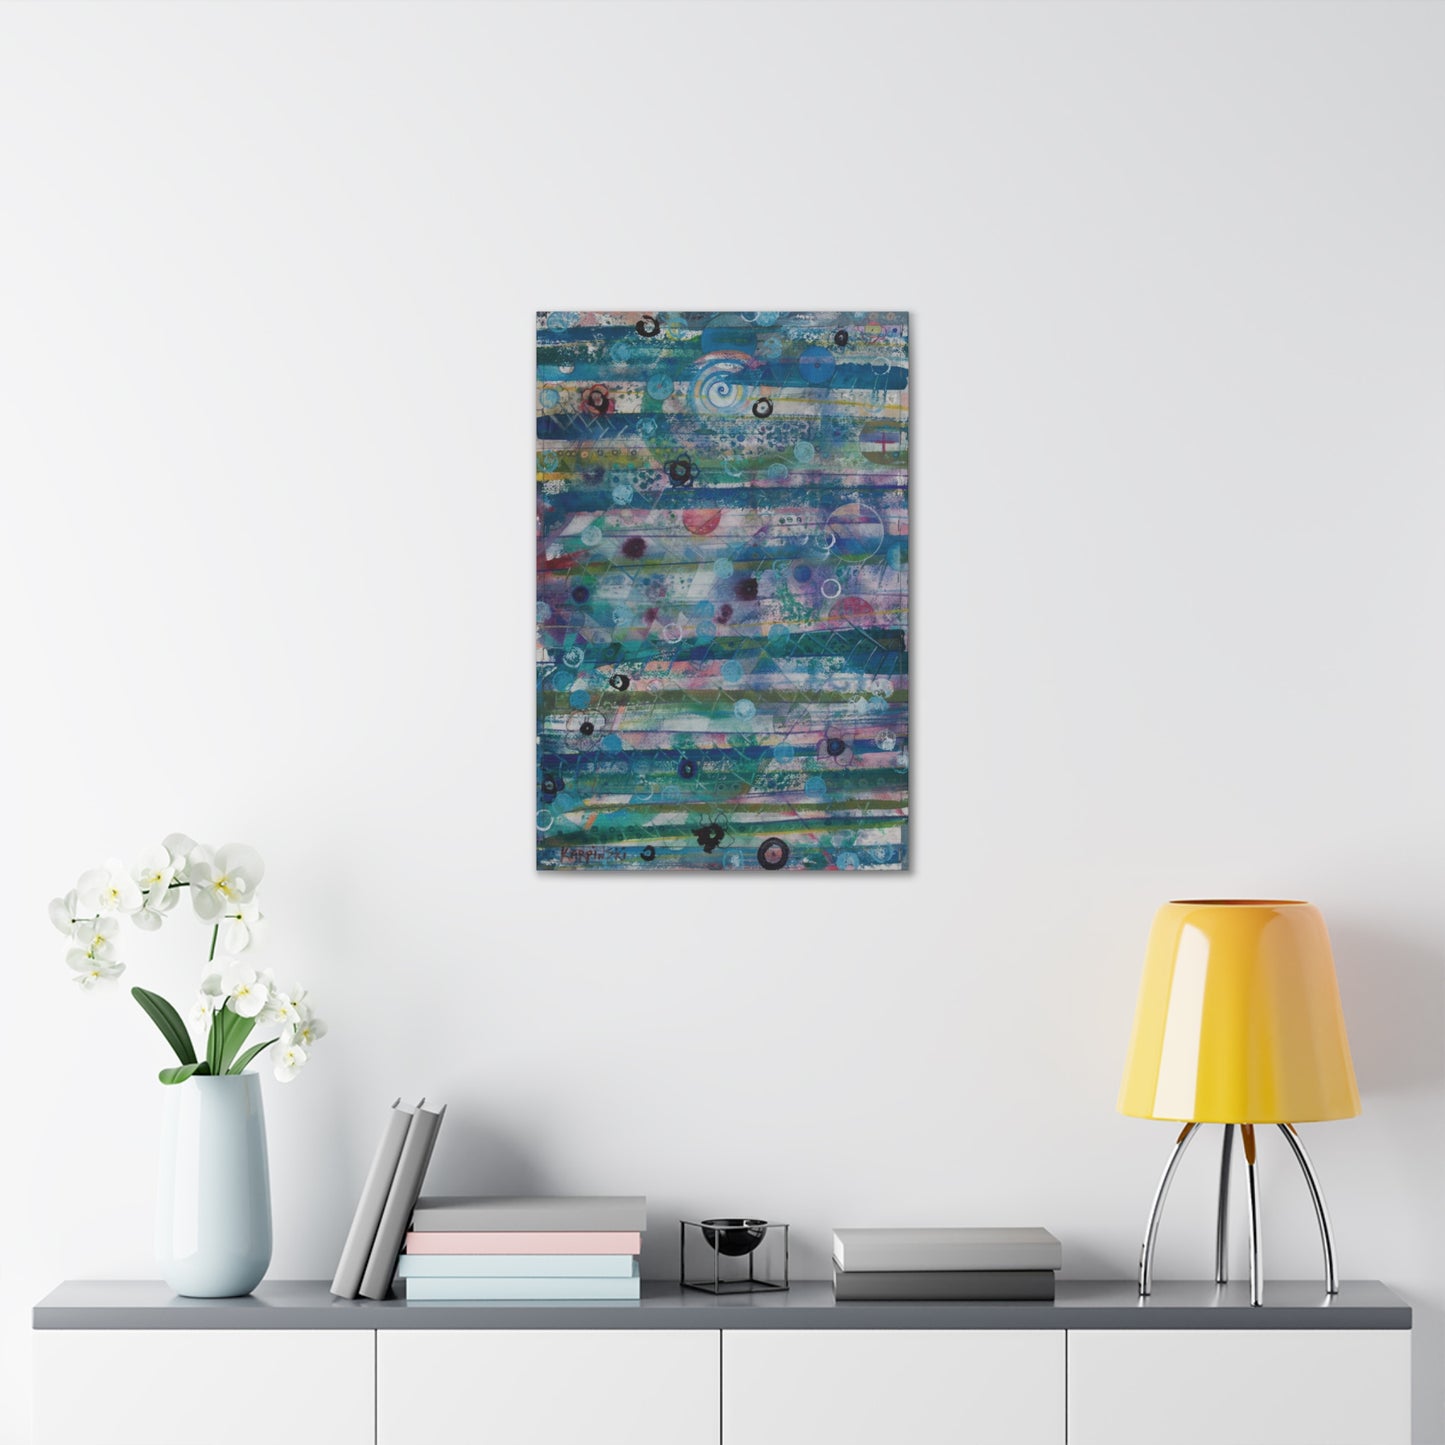 Abstract Canvas Wall Art Print Wall Decor - Celestial Sky by Leslie Karpinski